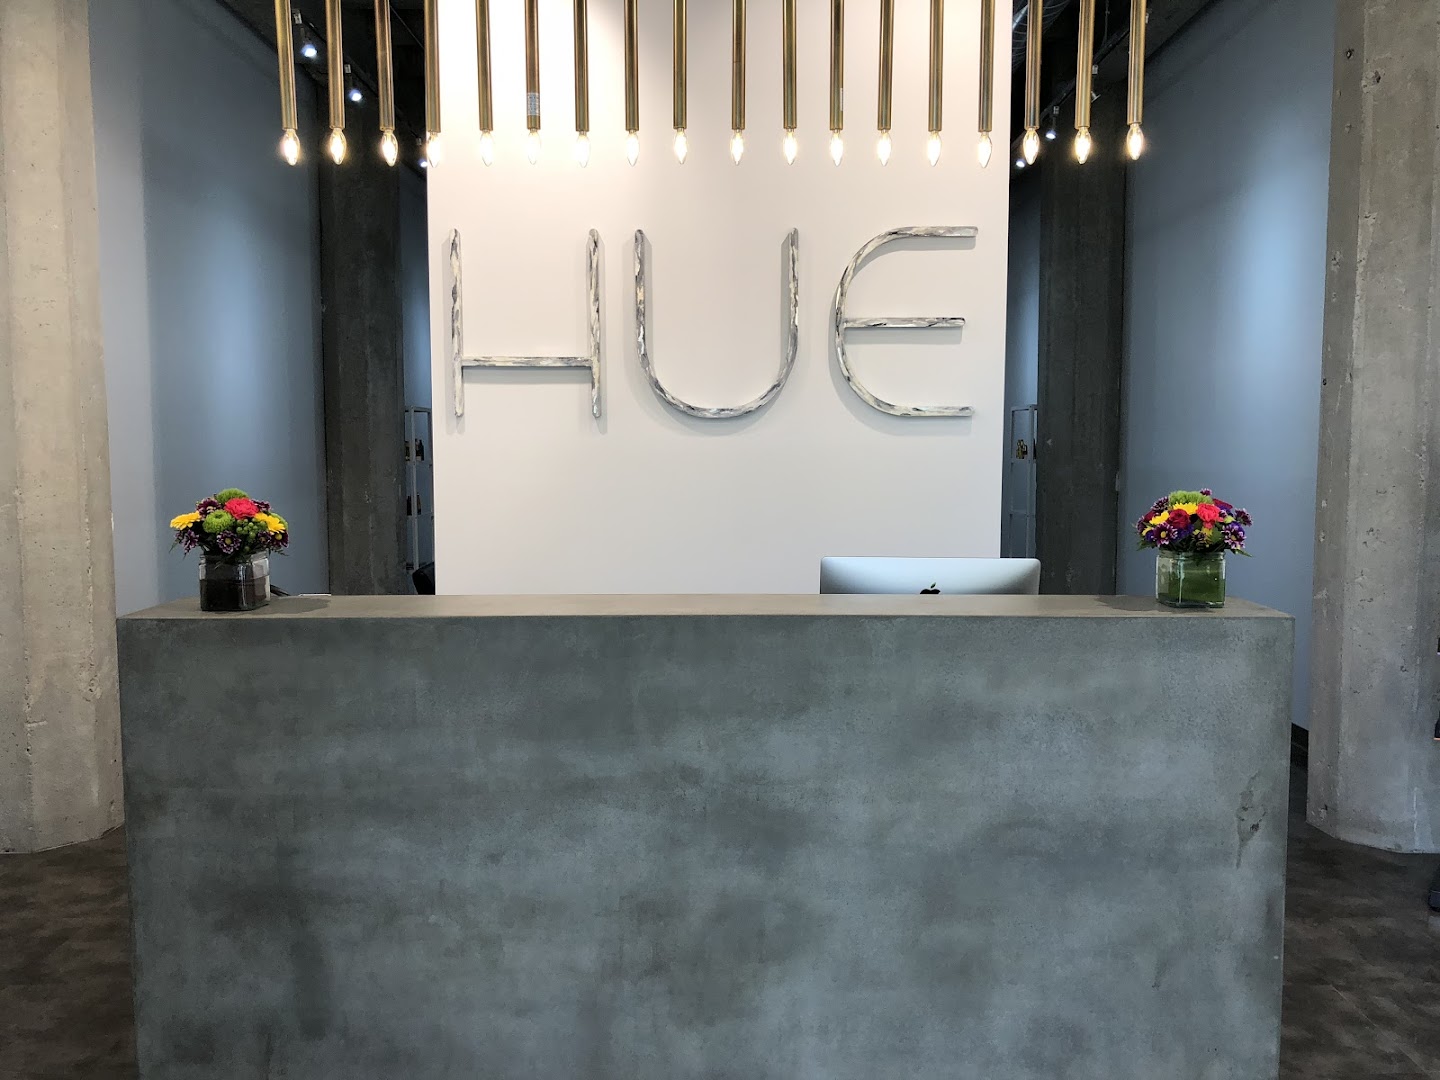 Hue Salon, LLC